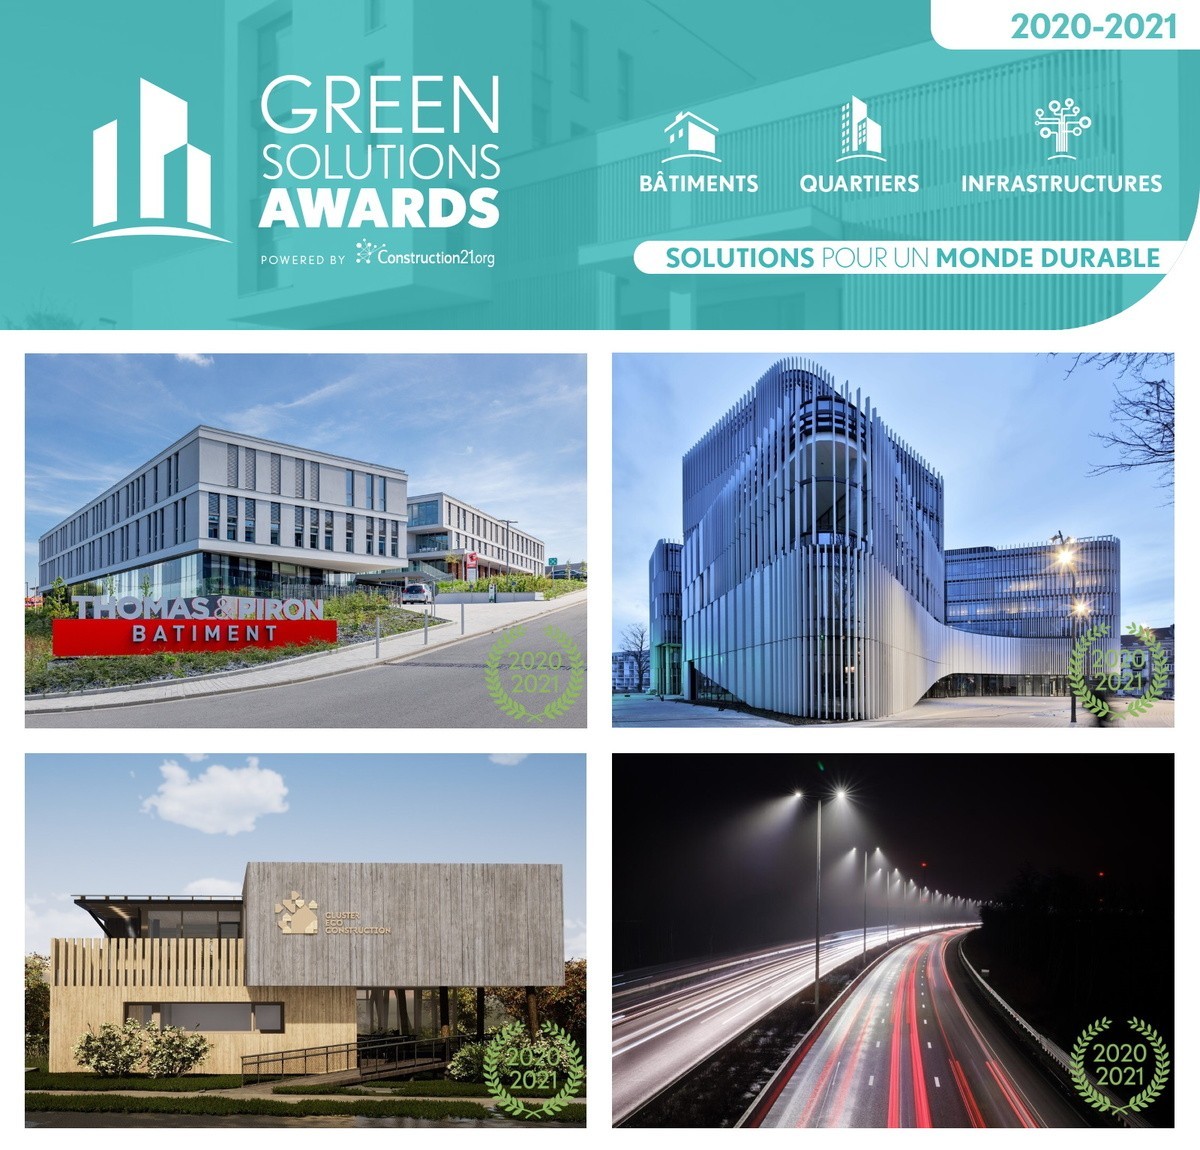 Green Solutions Awards 2020-21 : découvrez les lauréats belges !